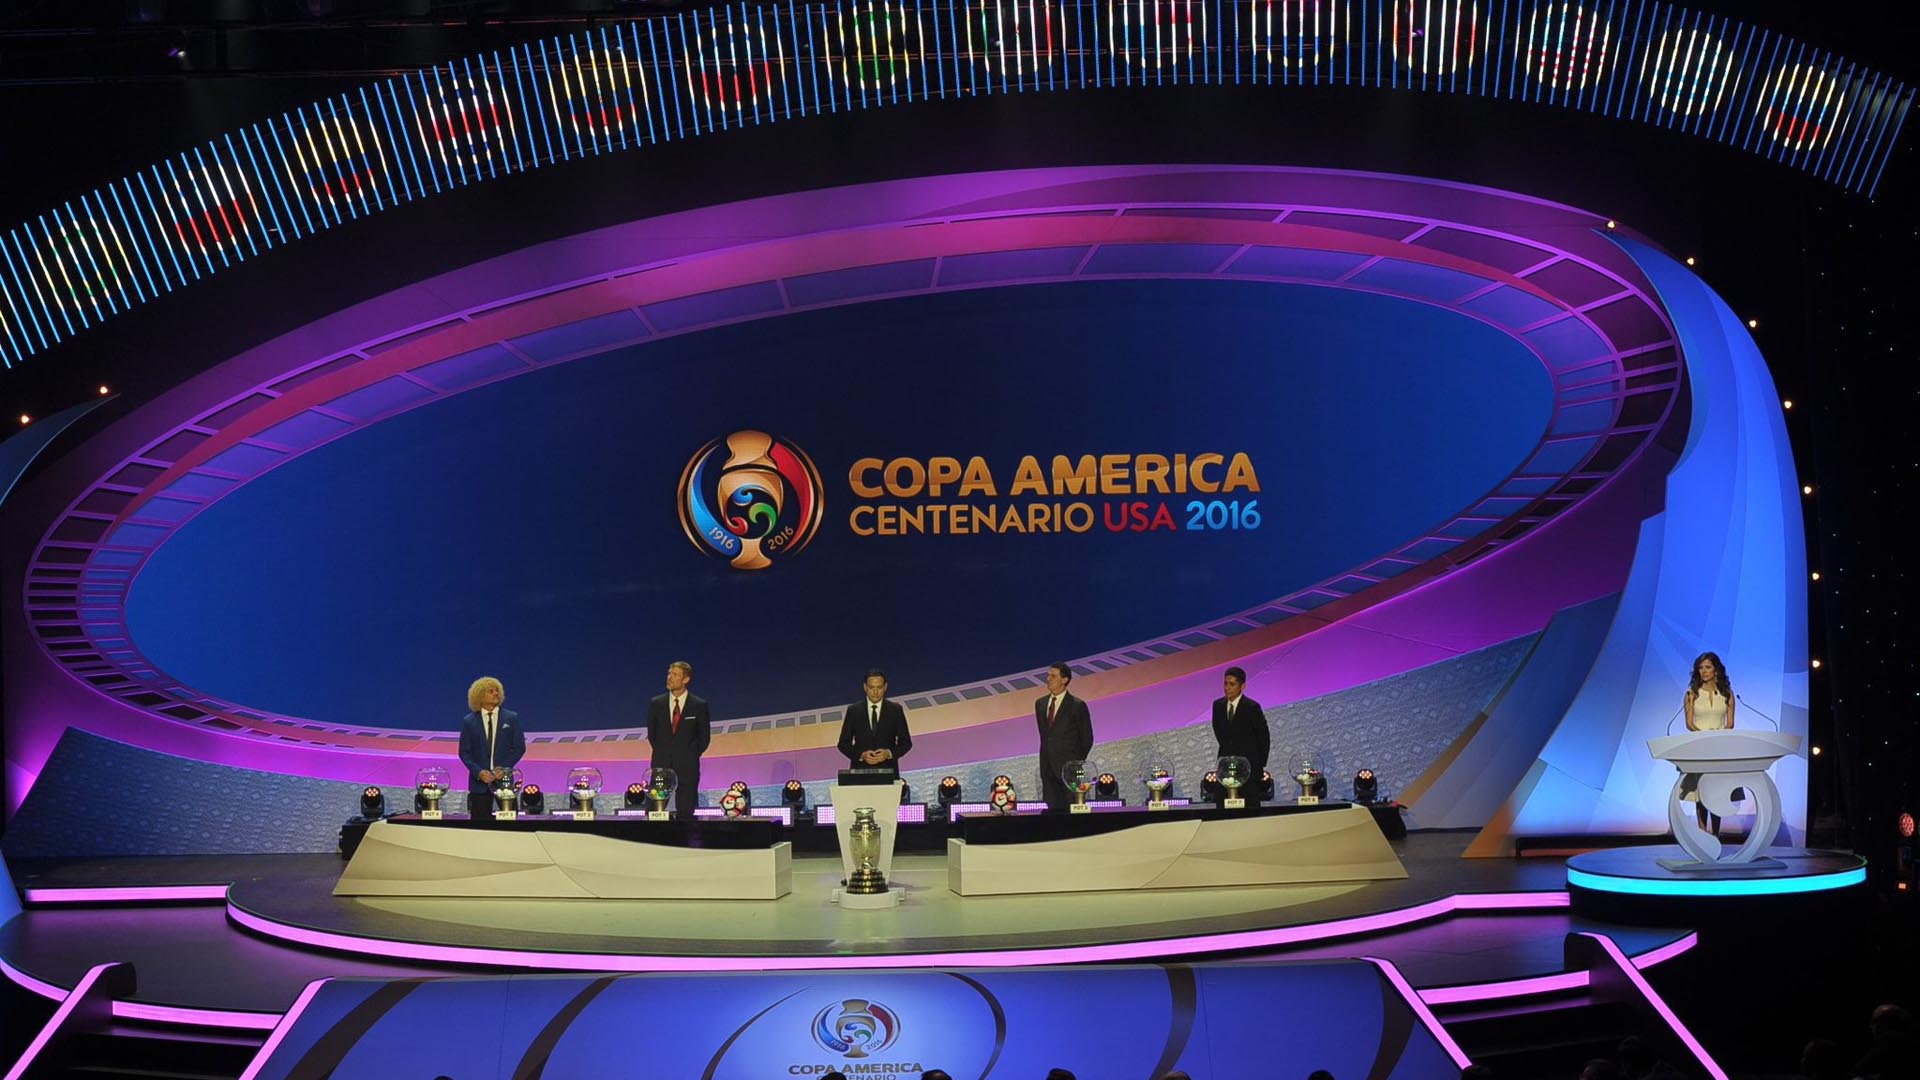 Será la primera vez que la Copa América tenga a 16 selecciones participantes